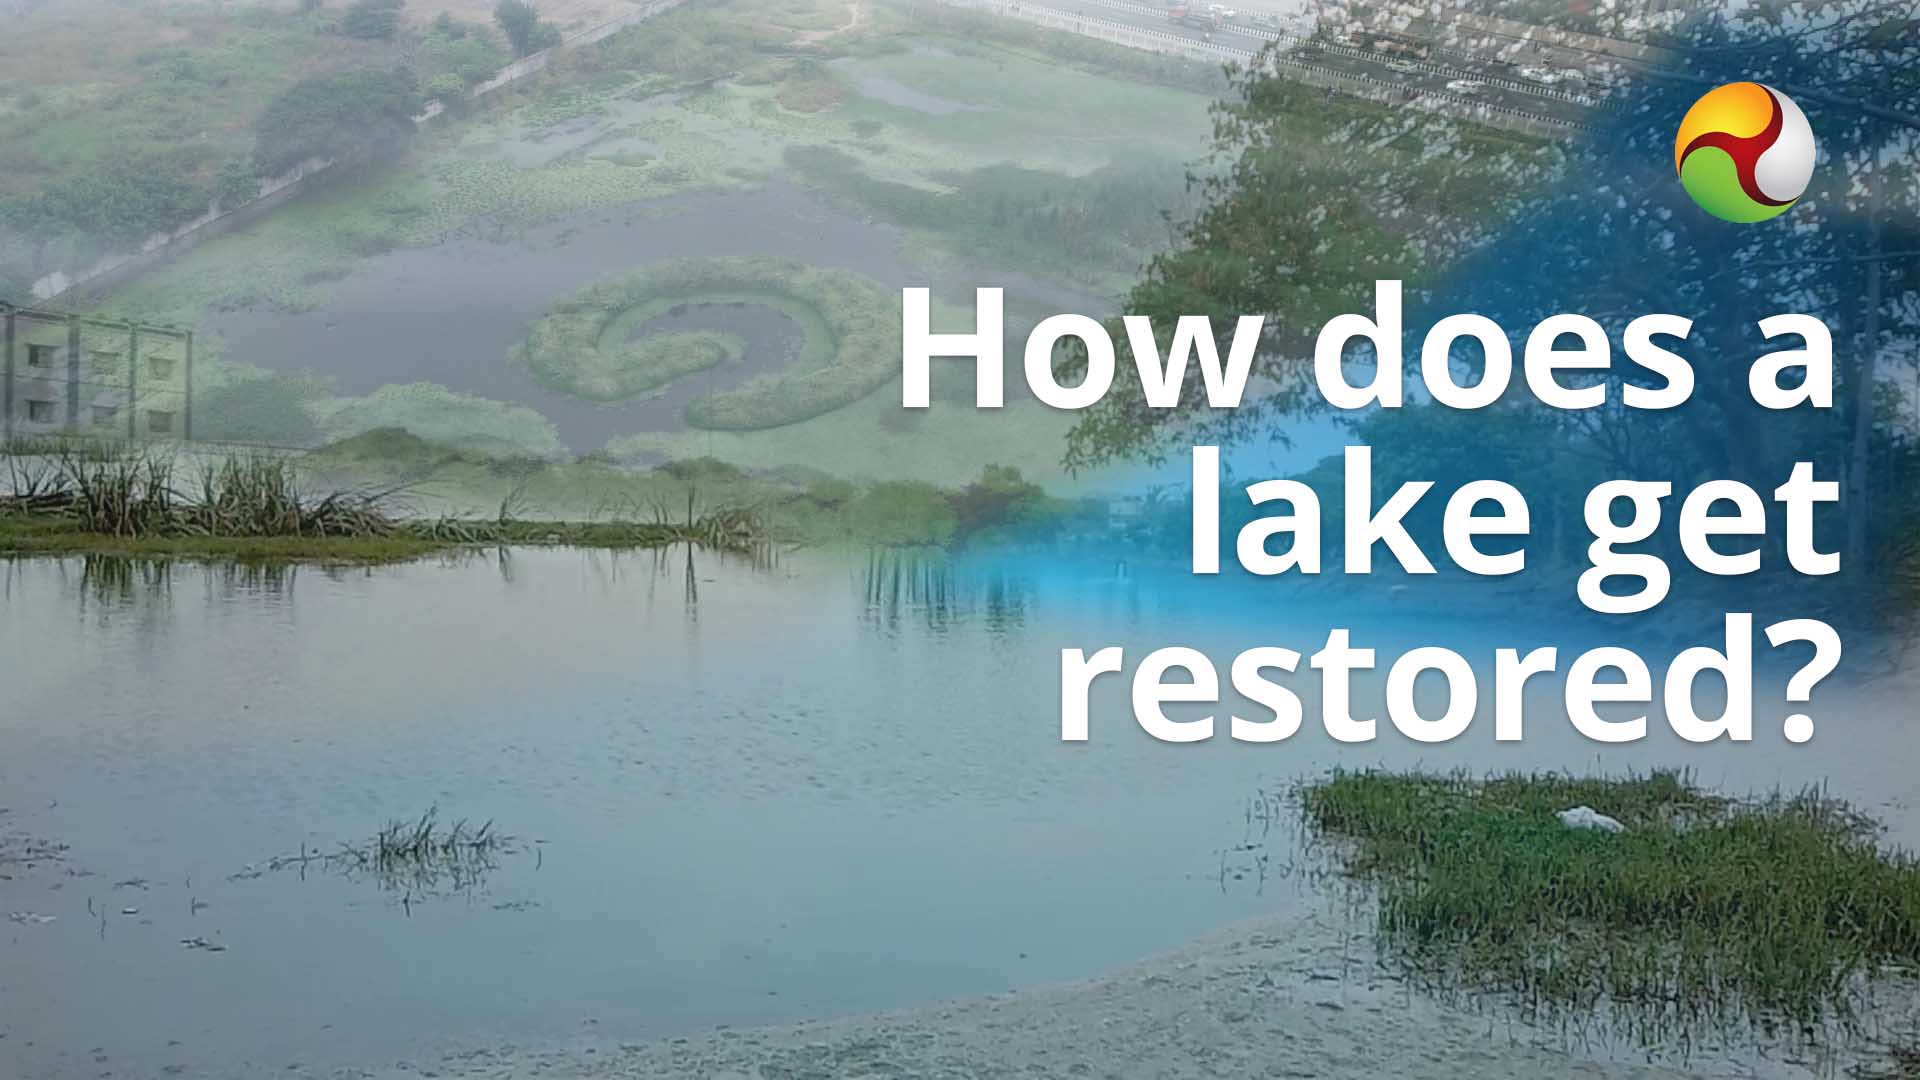 Lakes, Lake restoration, Silt, Sand, Draining